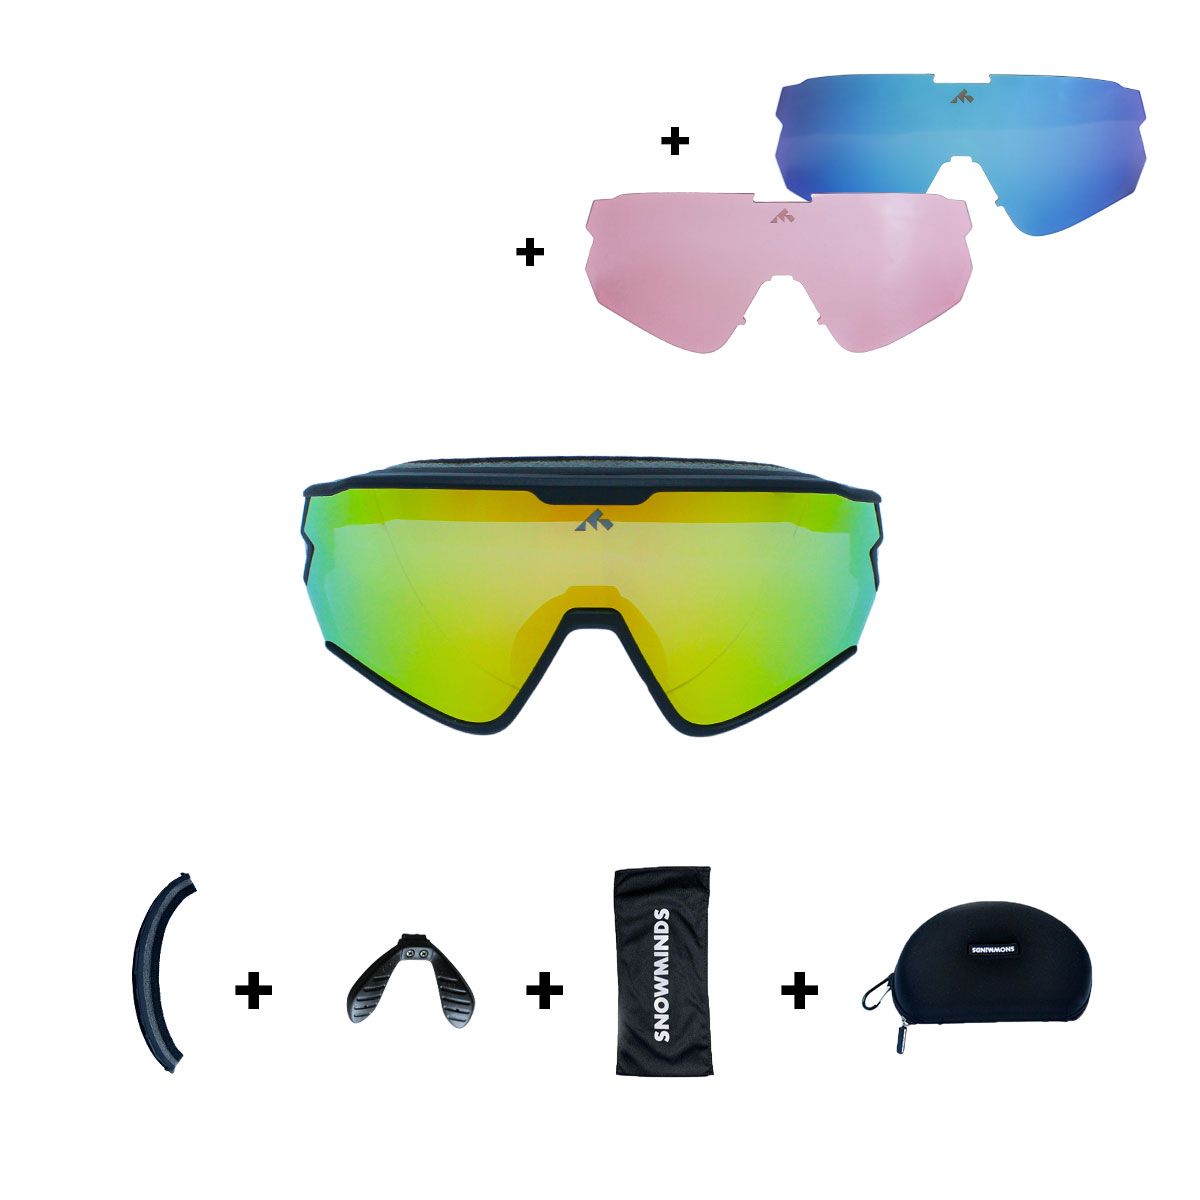 Brug The Snowminds Full Blast Sports Glasses + 3 Lenses + Case, sort til en forbedret oplevelse